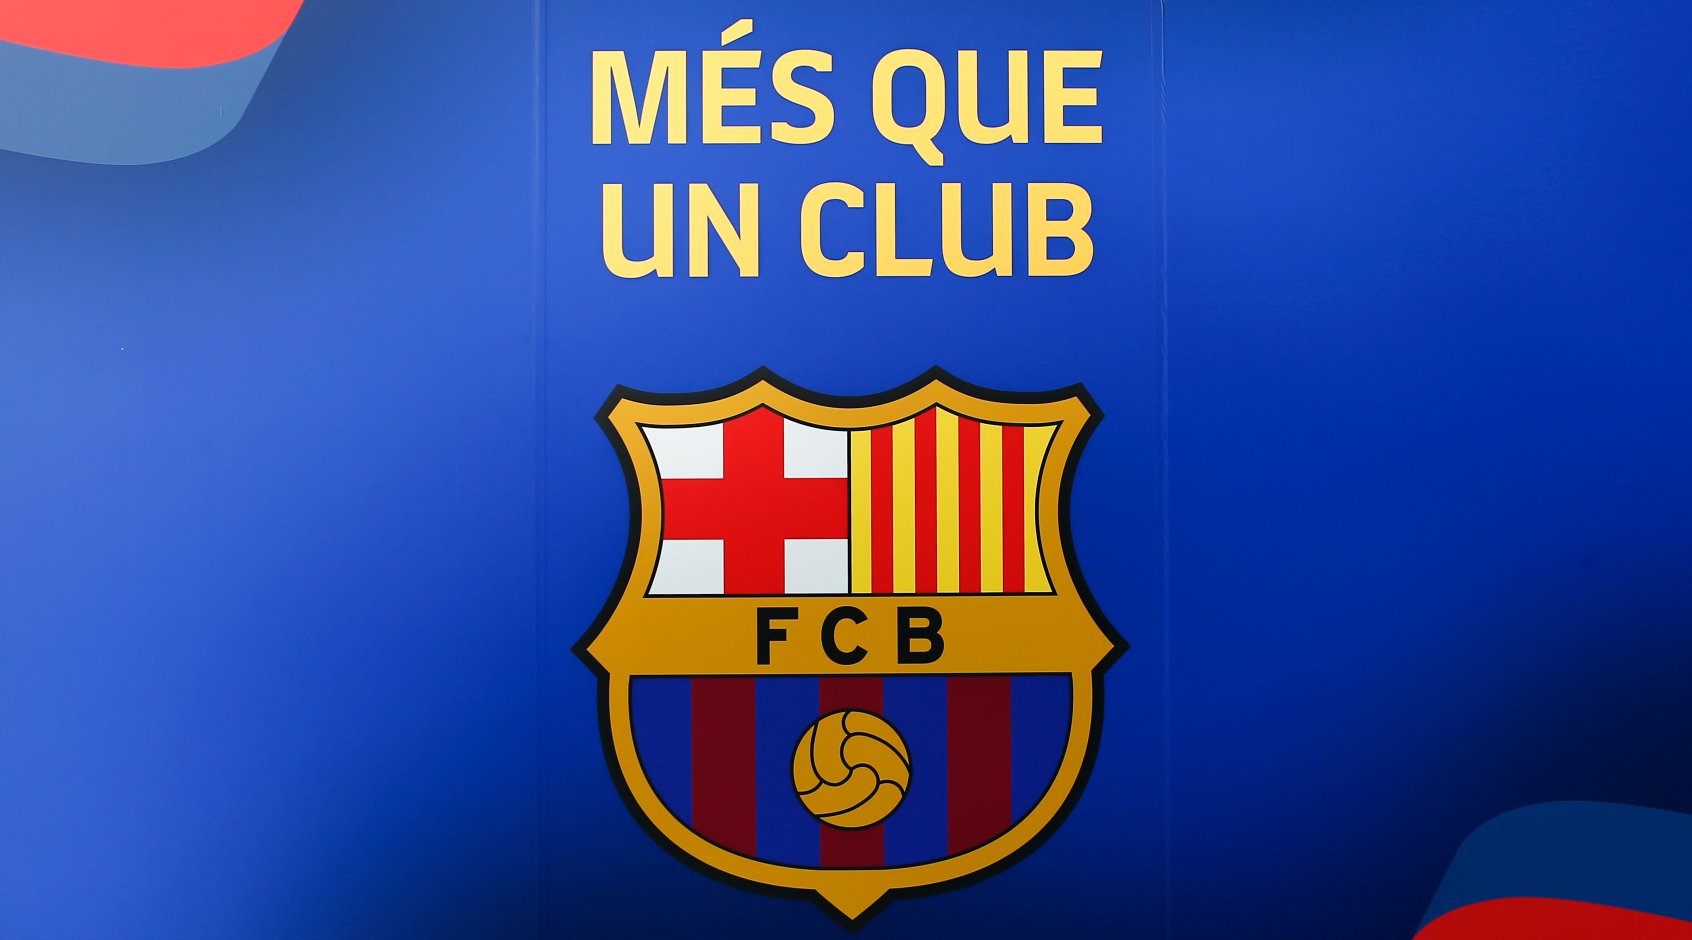 4 игрока «Барселоны» будут выставлены на трансфер в январе 